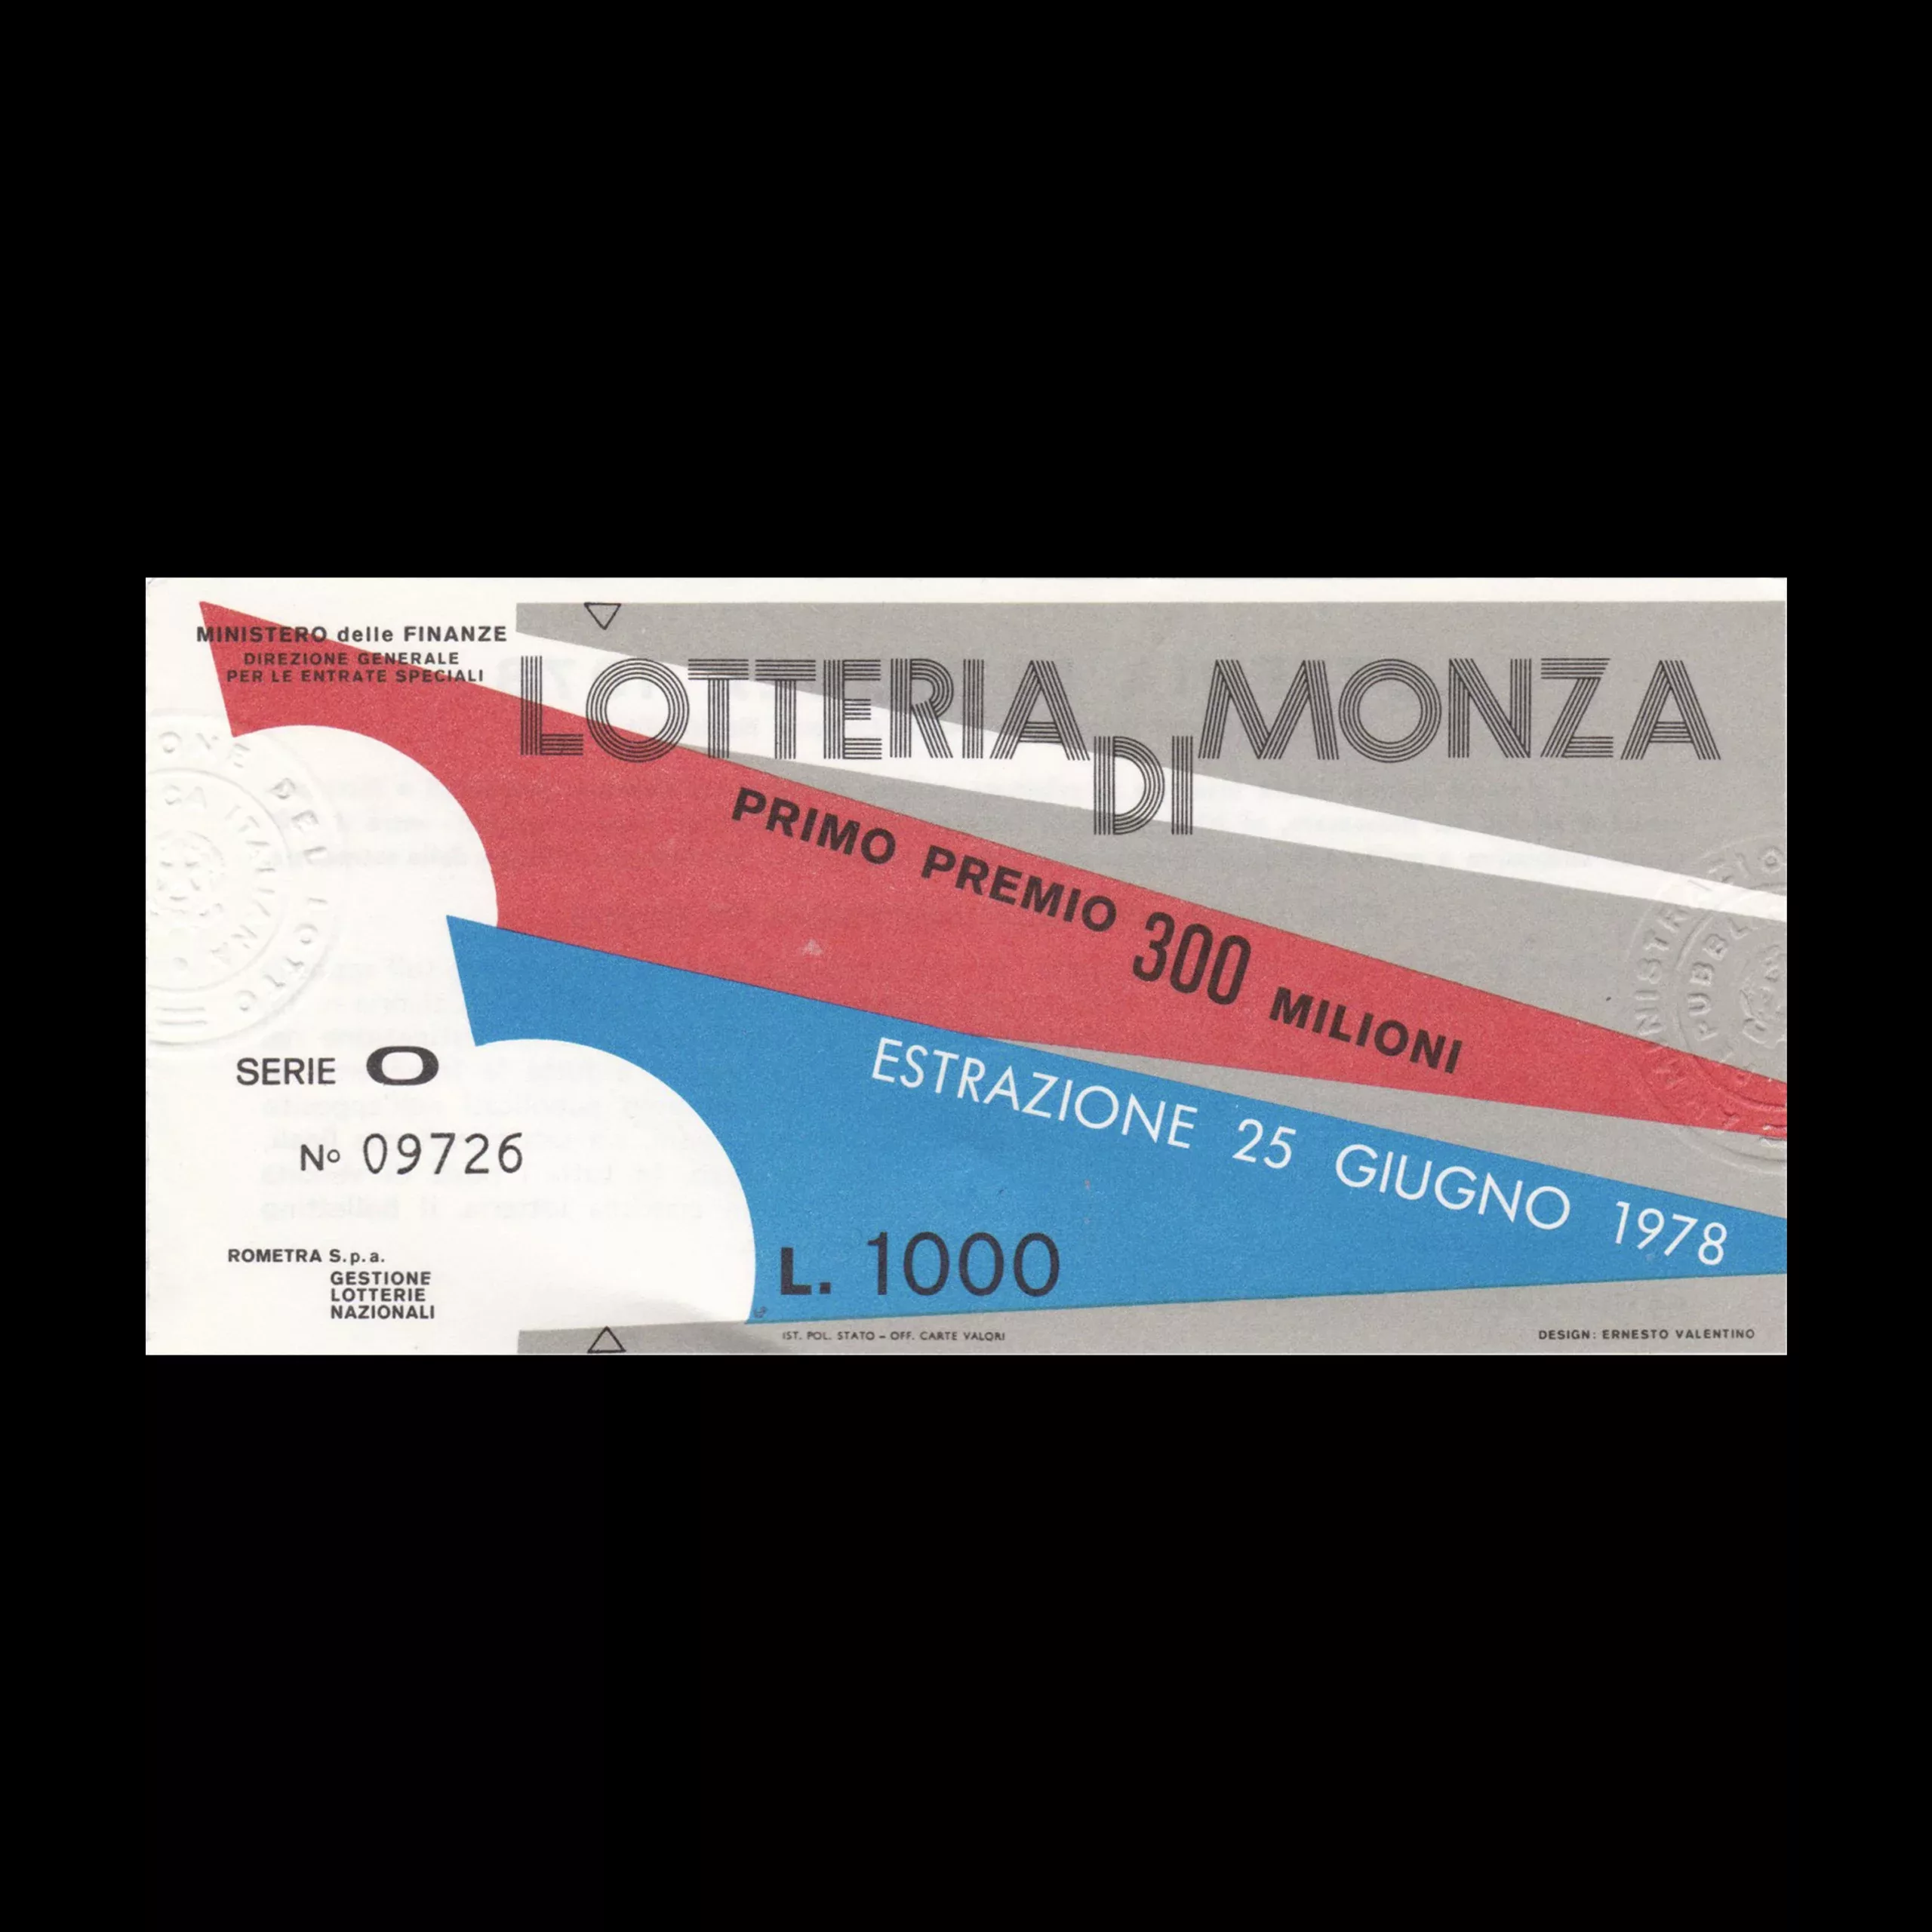 Lotteria Di Monza 1978. Designed by Ernesto Valentino